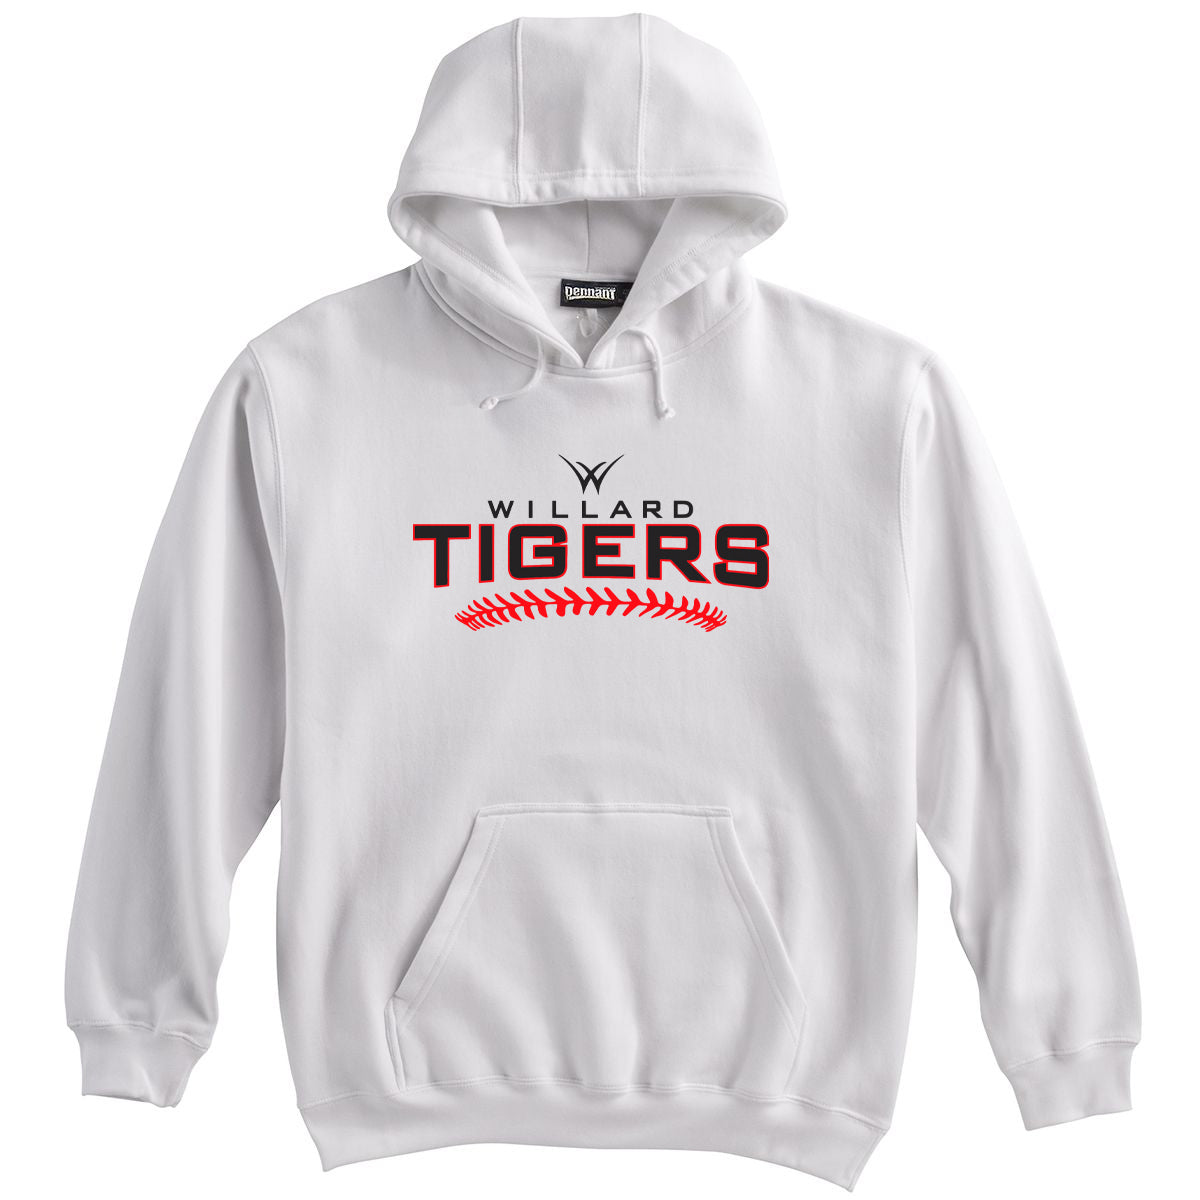 Willard Tigers Baseball Sweatshirt